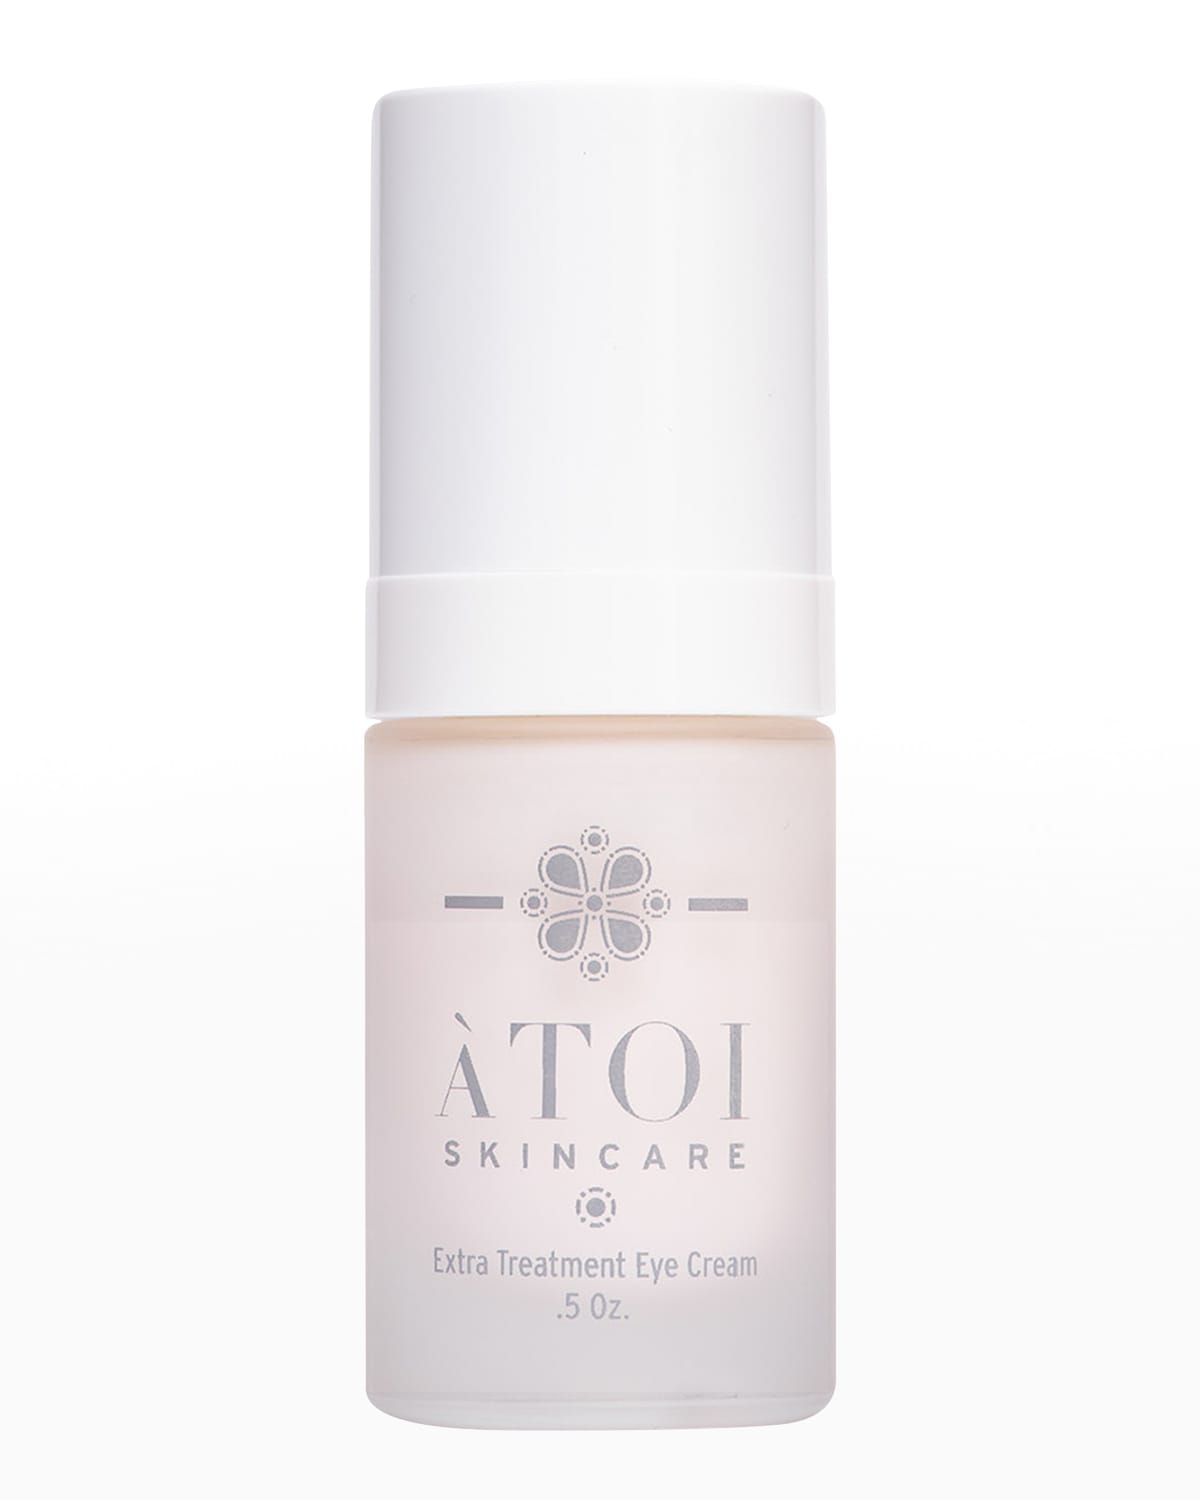 ATOI Skincare Extra Treatment Eye Cream, 0.5 oz.